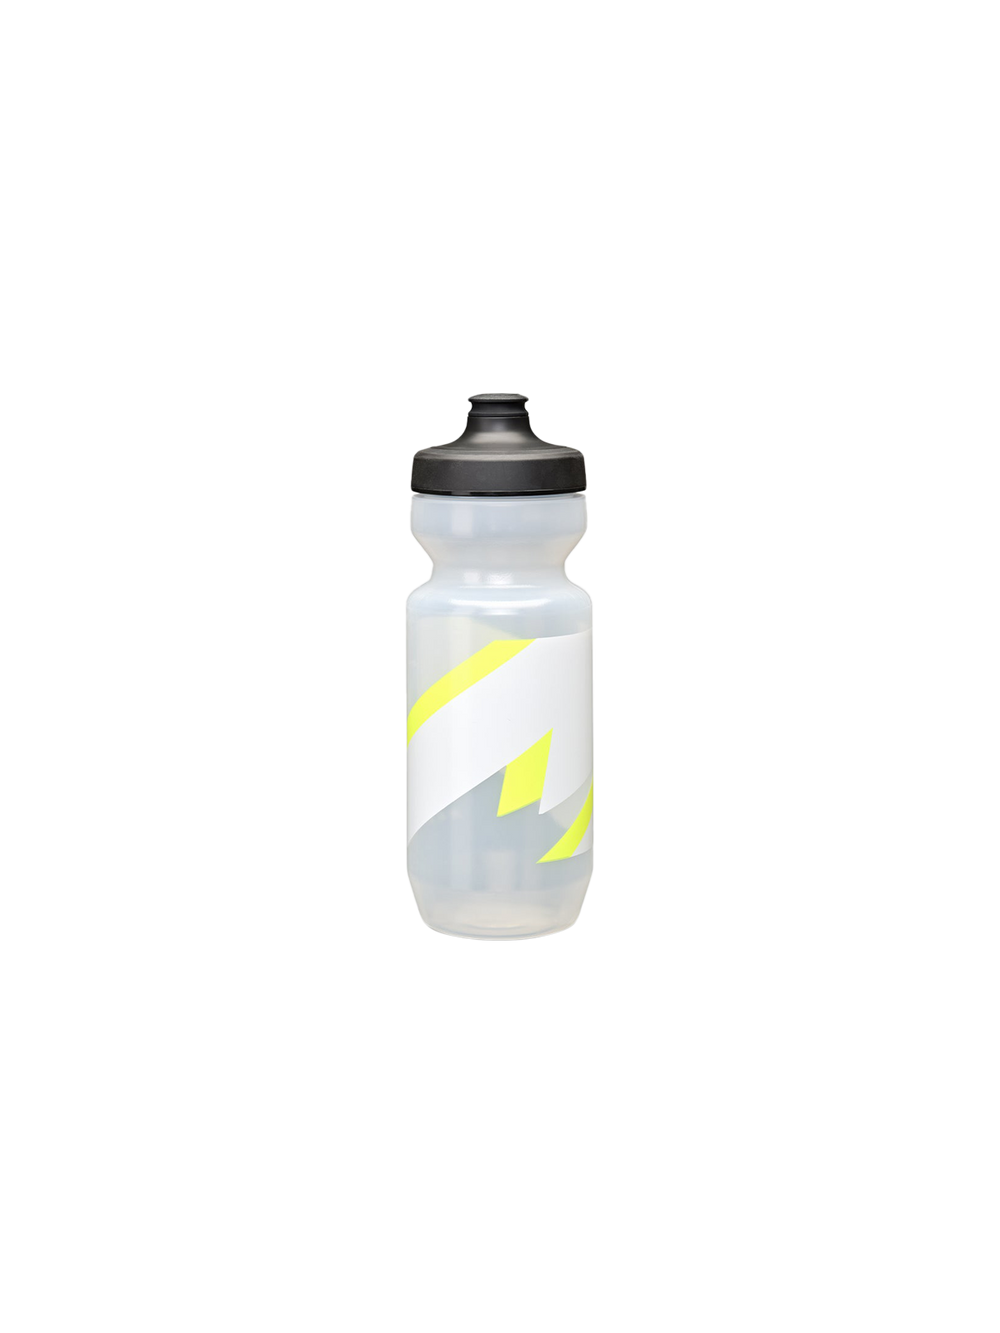 Product Image for Evolve 3D Bottle